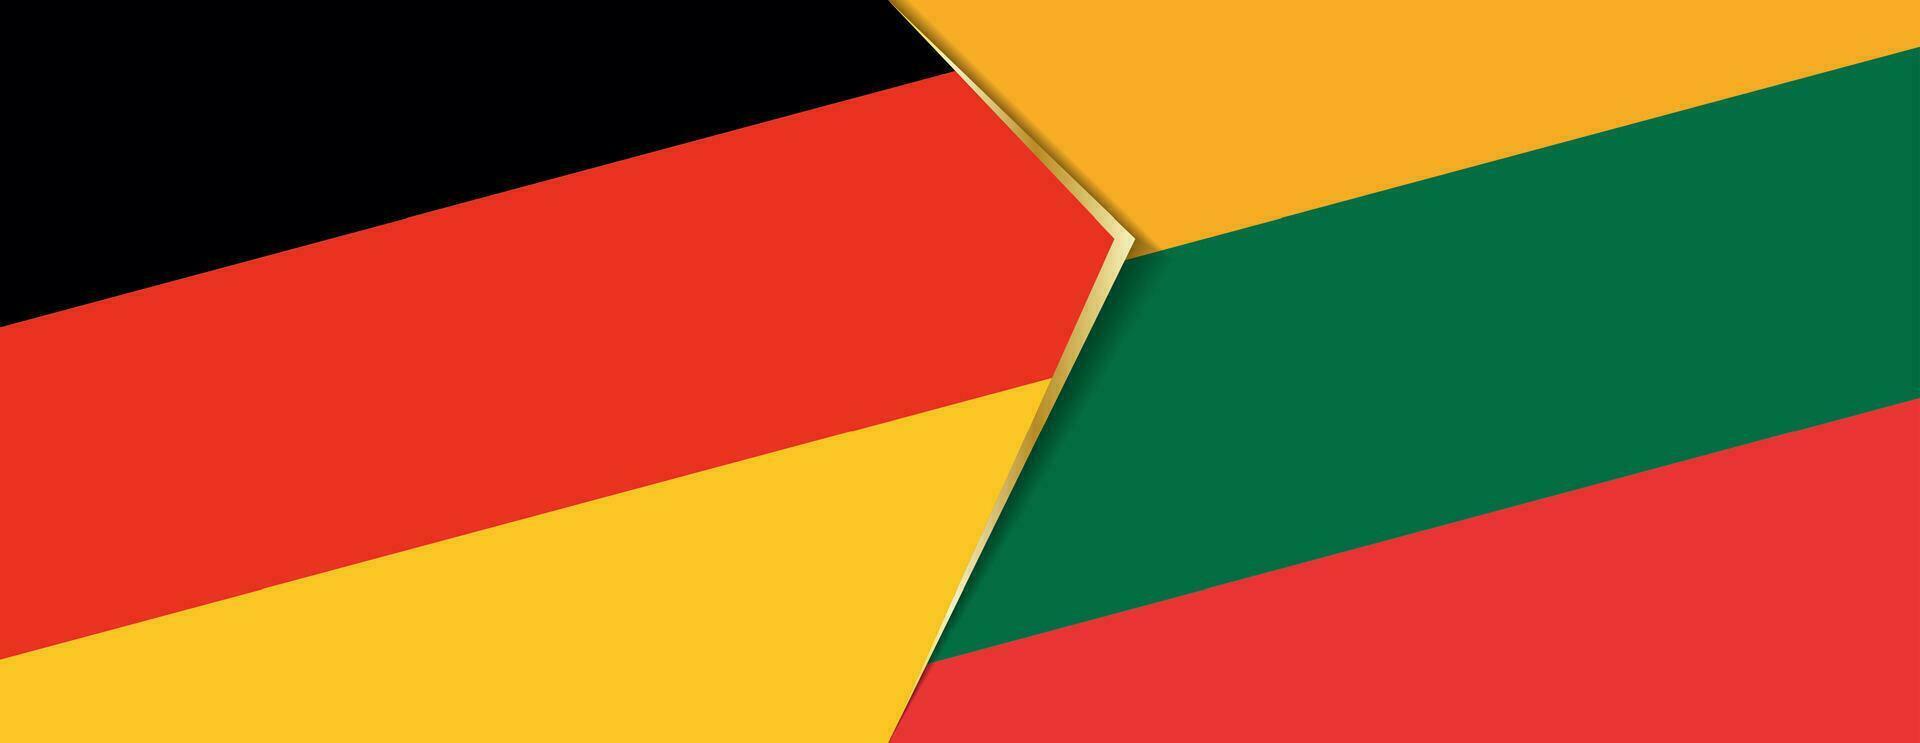 Tyskland och litauen flaggor, två vektor flaggor